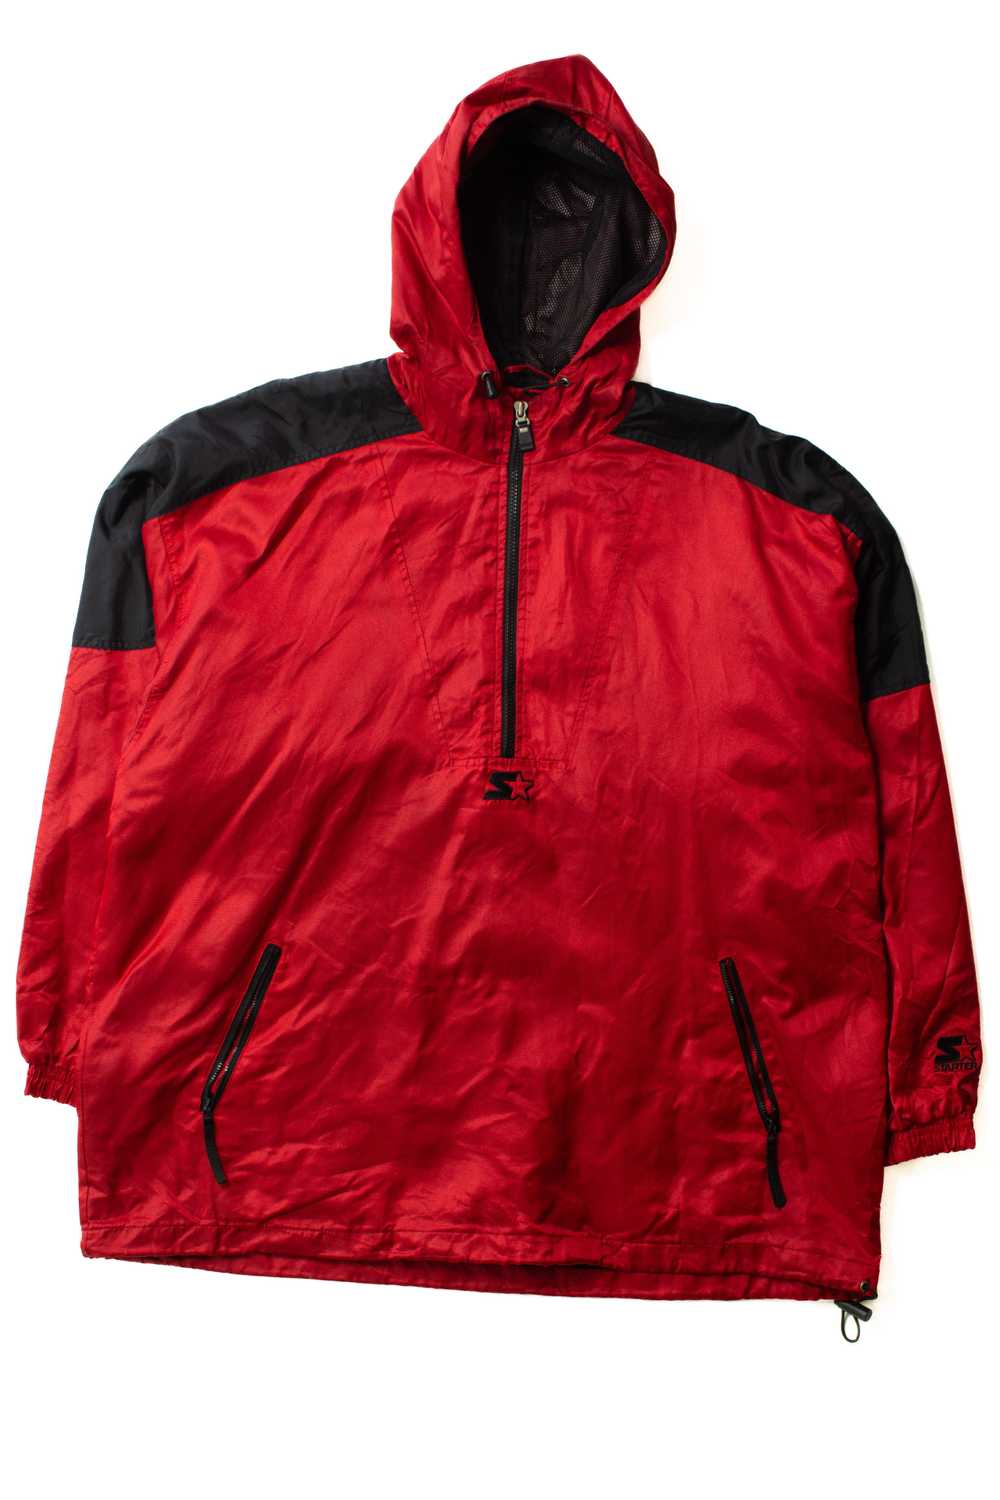 Vintage Red Starter Pullover Jacket (1990s) - image 3